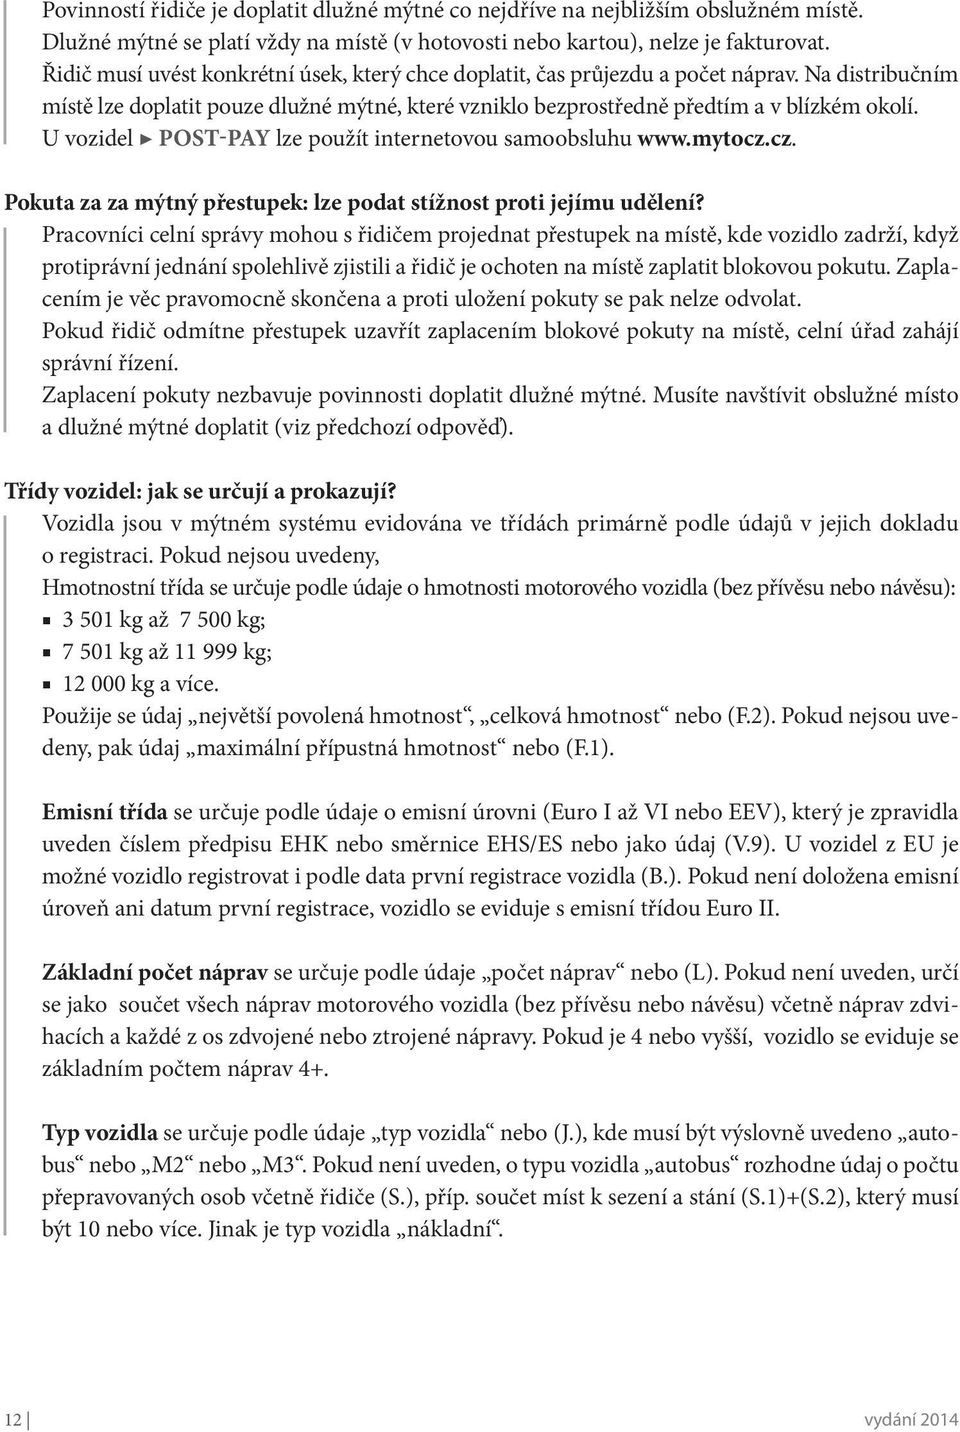 U vozidel POST-PAY lze použít internetovou samoobsluhu www.mytocz.cz. Pokuta za za mýtný přestupek: lze podat stížnost proti jejímu udělení?